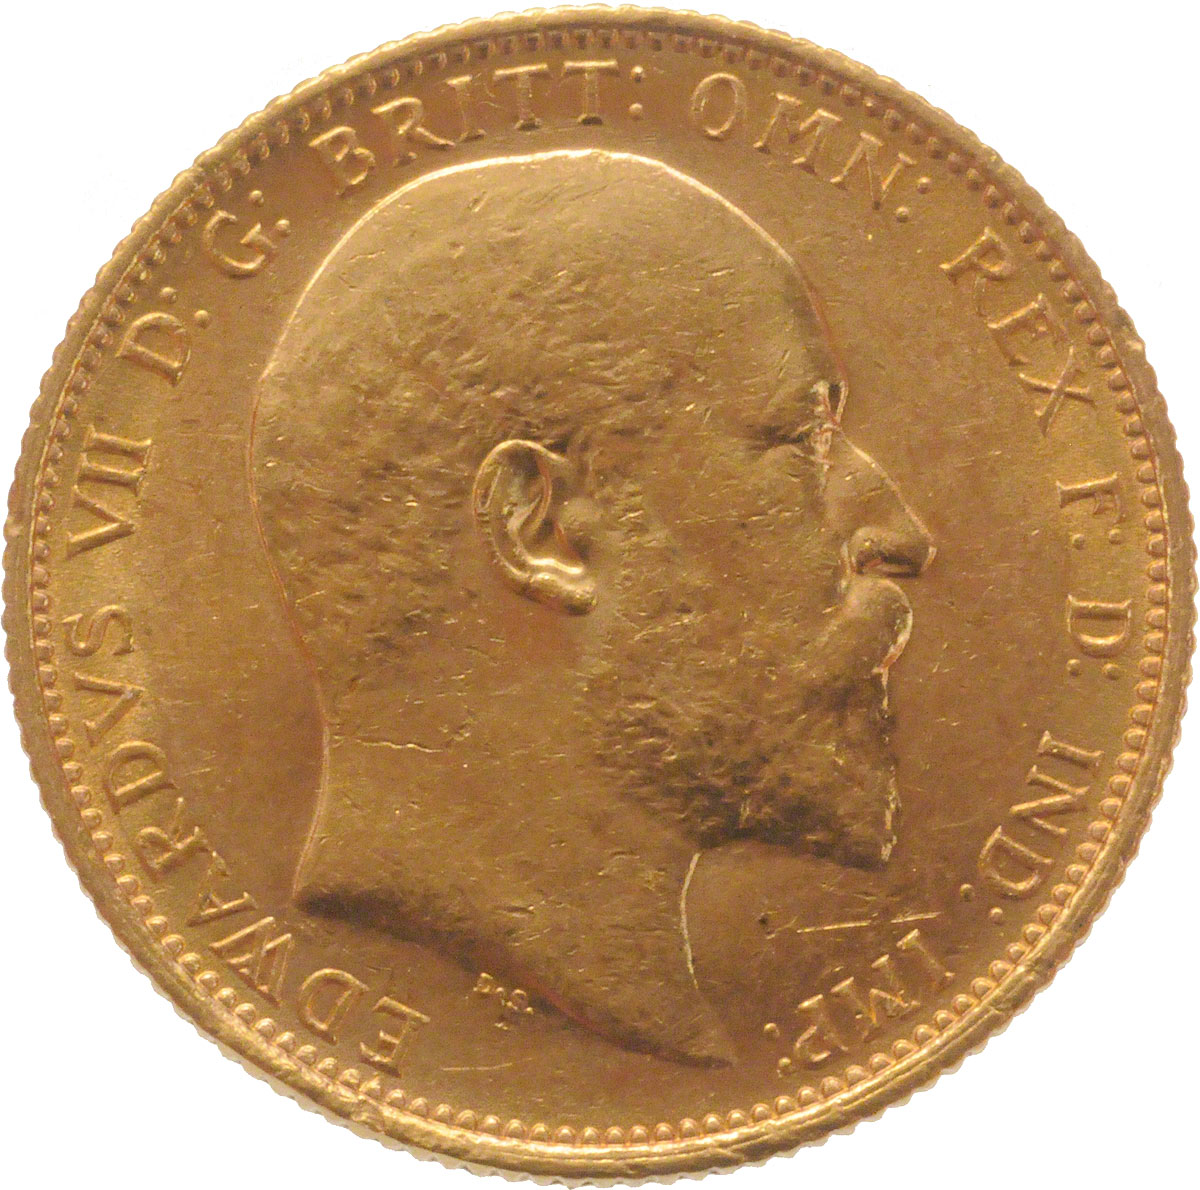 1902 Εδουάρδος Ζ’ (Νομισματοκοπείο Σίδνεϊ)